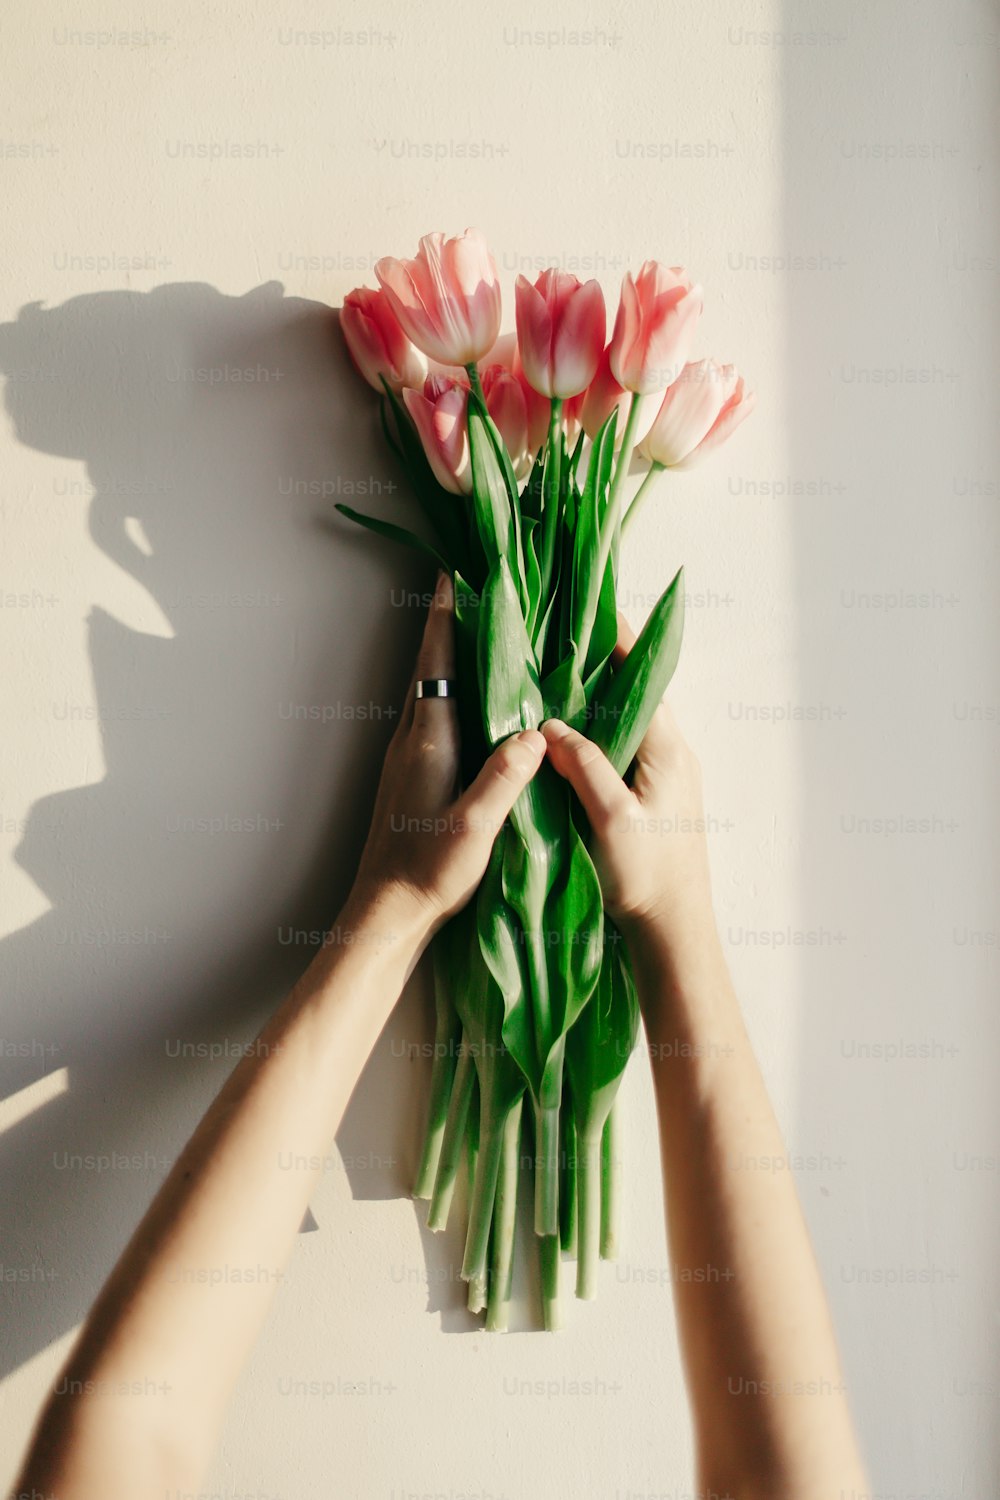 mani che tengono tulipani rosa in una luce soffusa mattutina su parete rustica bianca vicino alla finestra sullo sfondo di casa. Mood fresco primaverile. concetto di workshop di blog su Instagram. spazio per il testo